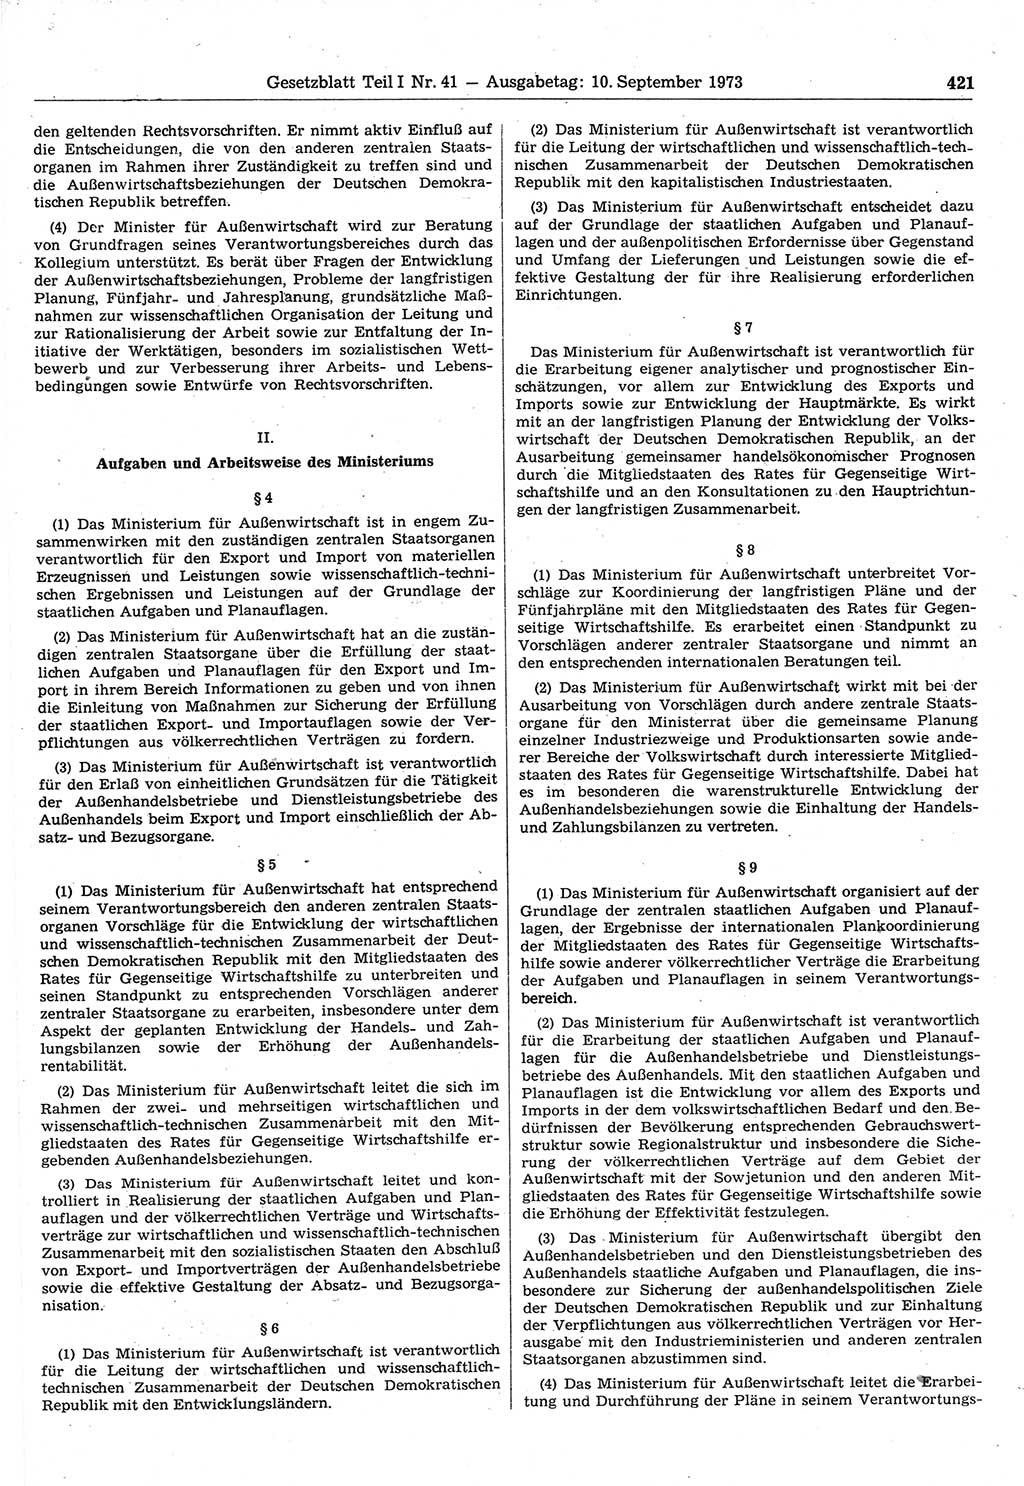 Gesetzblatt (GBl.) der Deutschen Demokratischen Republik (DDR) Teil Ⅰ 1973, Seite 421 (GBl. DDR Ⅰ 1973, S. 421)